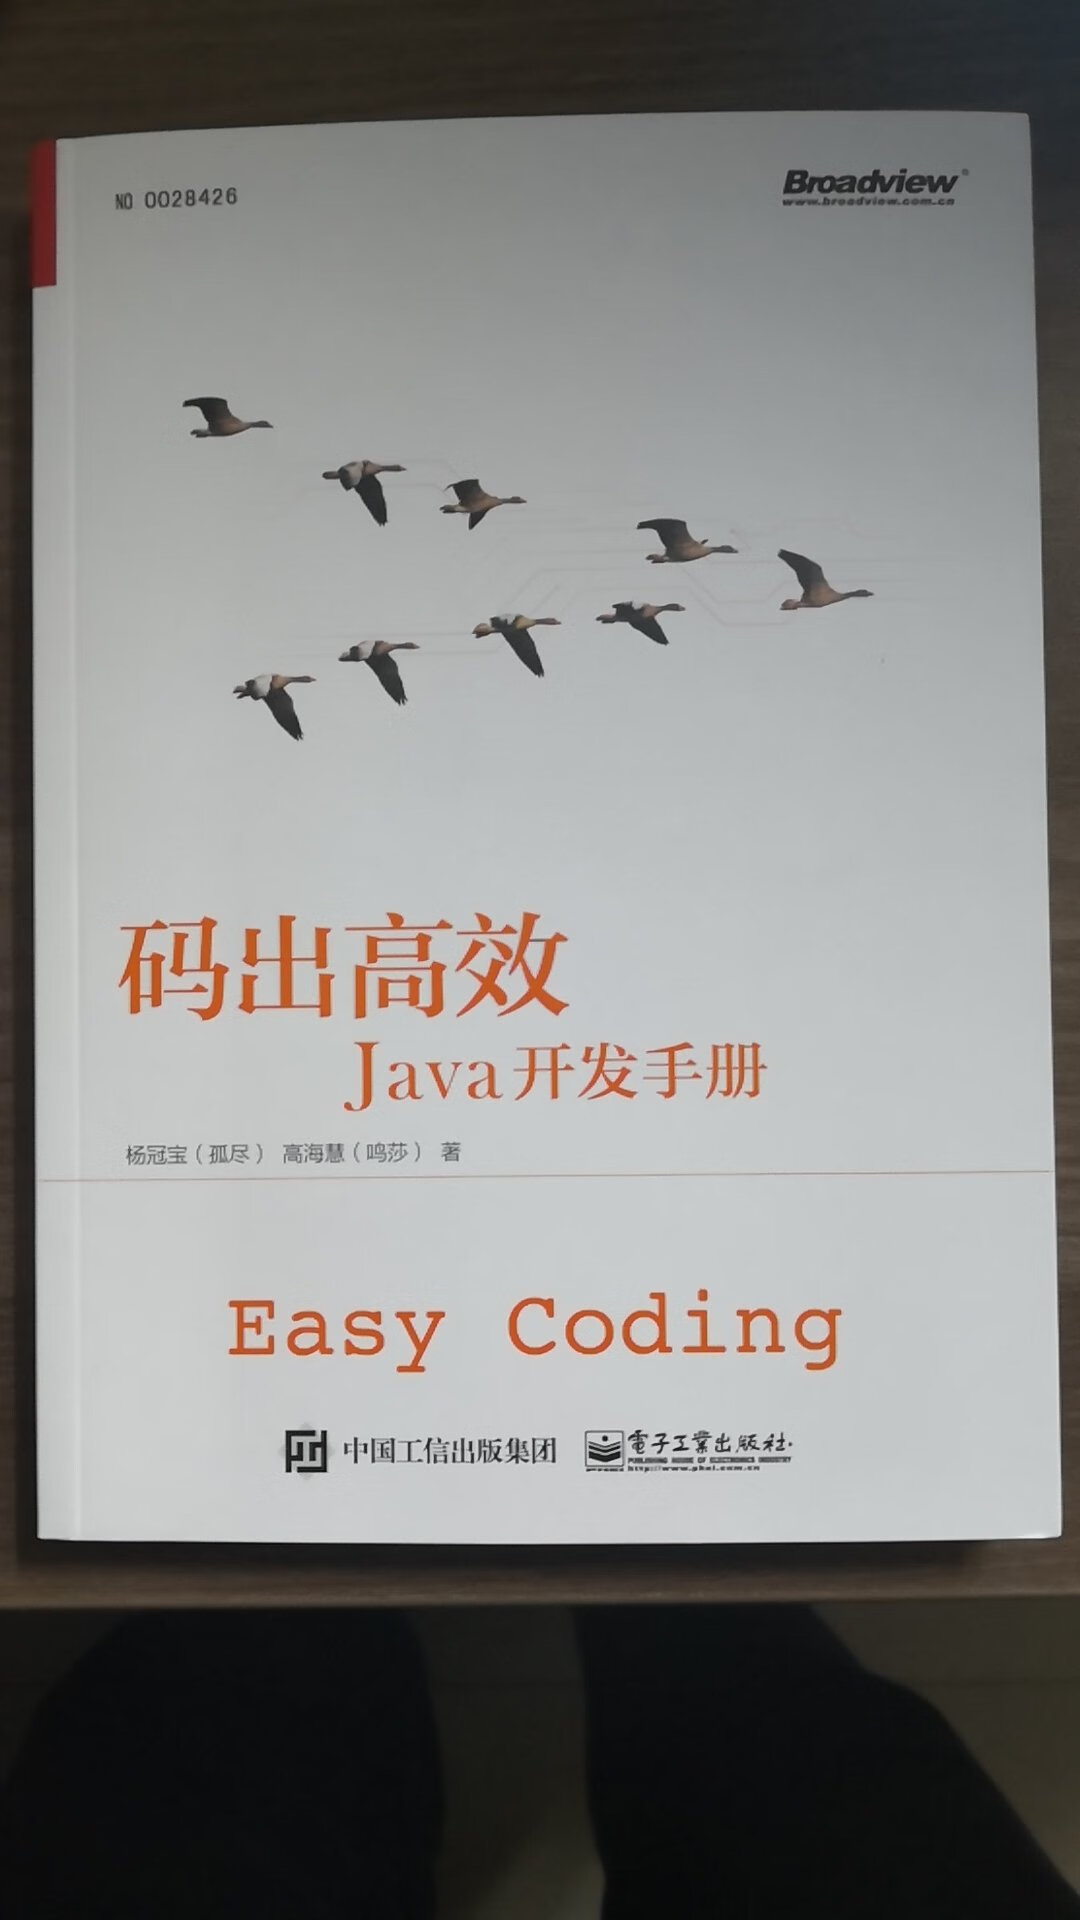 挺不错的书，对于java编程有些独到的见解，能够帮助程序员有所提升。